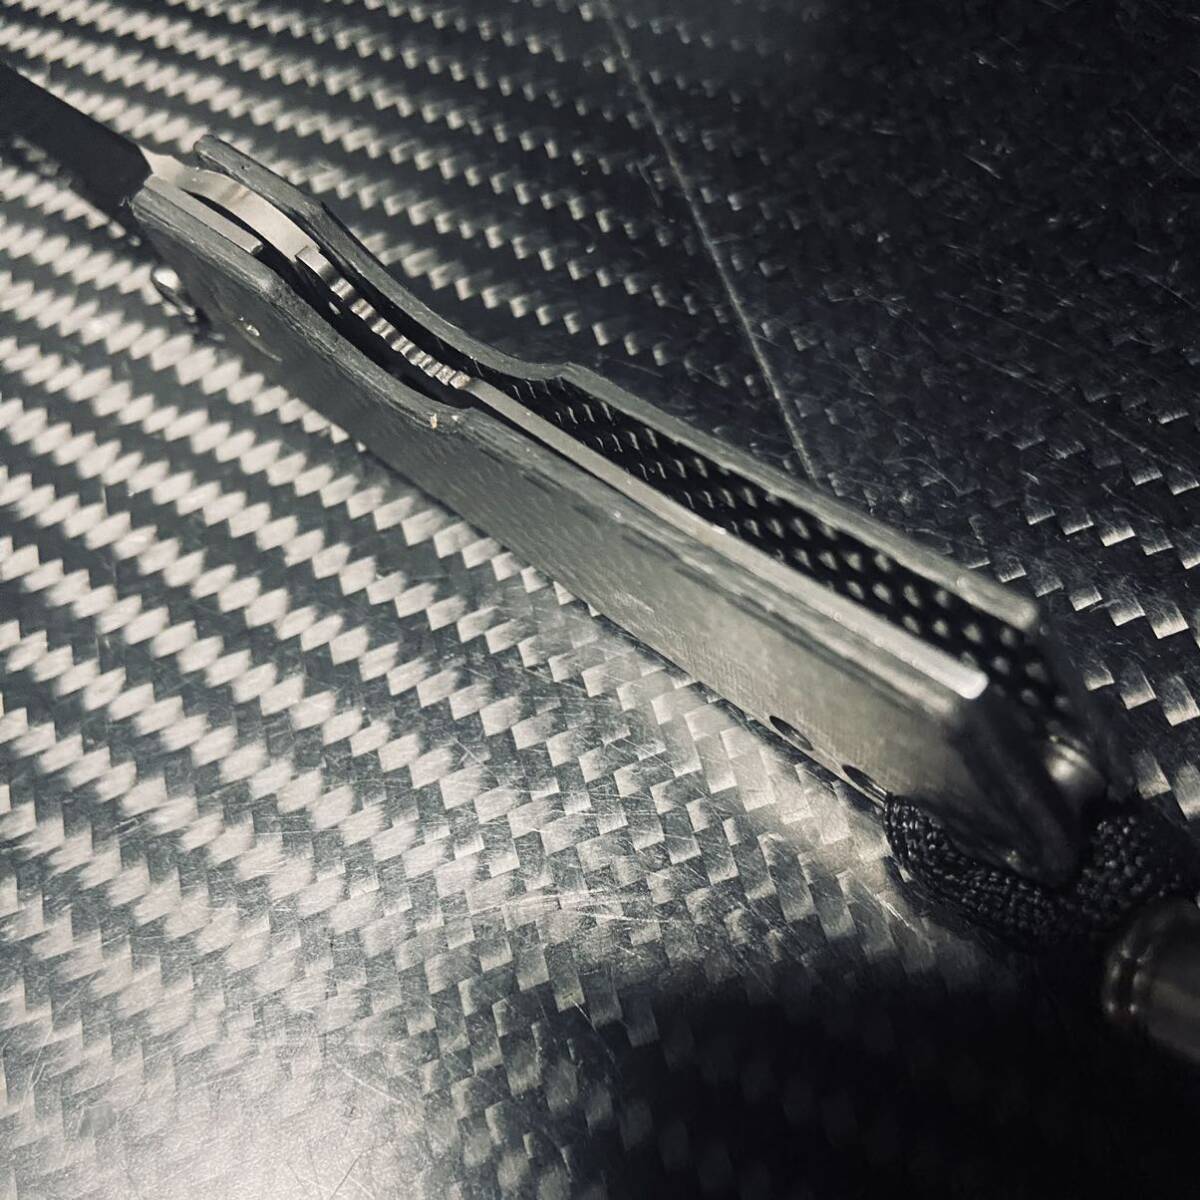 feather 非金属 カーボン製ハンドル セラミック刃 折りたたみナイフ 超軽量39g 長さ13.5cmアウトドアEDC サバイバルの画像6